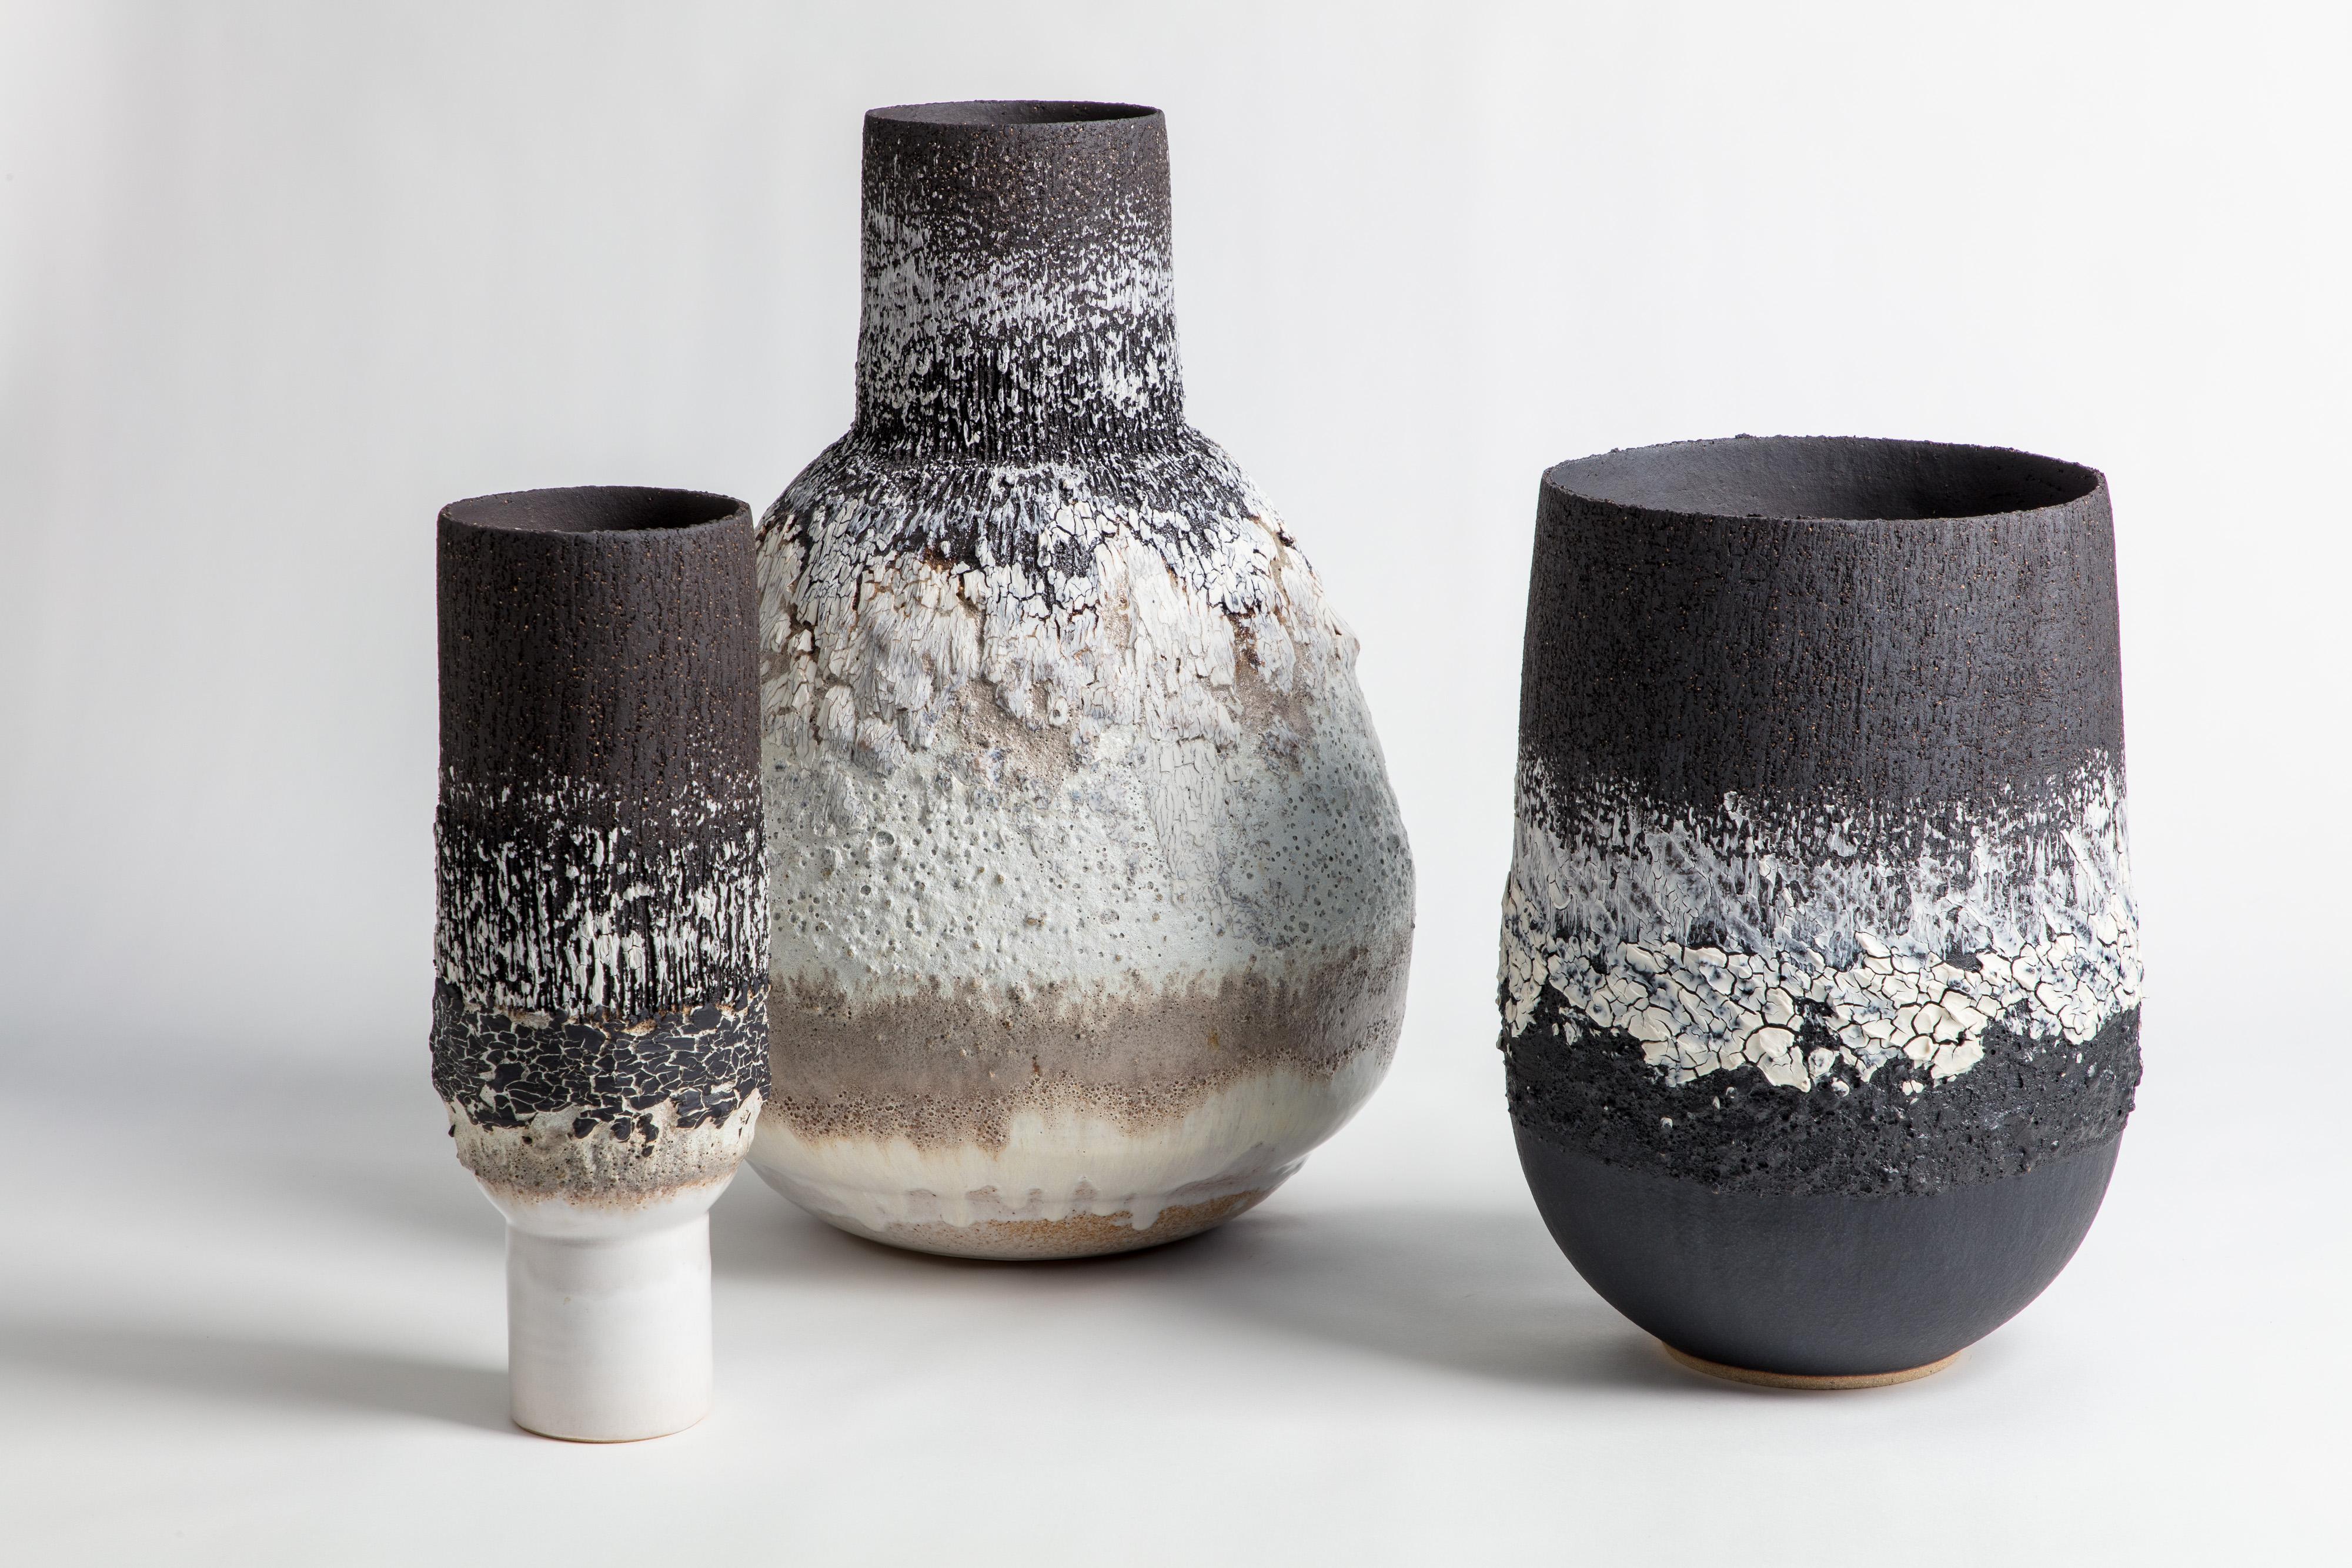 British Narrow Ceramic and Black Cracked Porcelain Volcanic Pedestal Vase For Sale